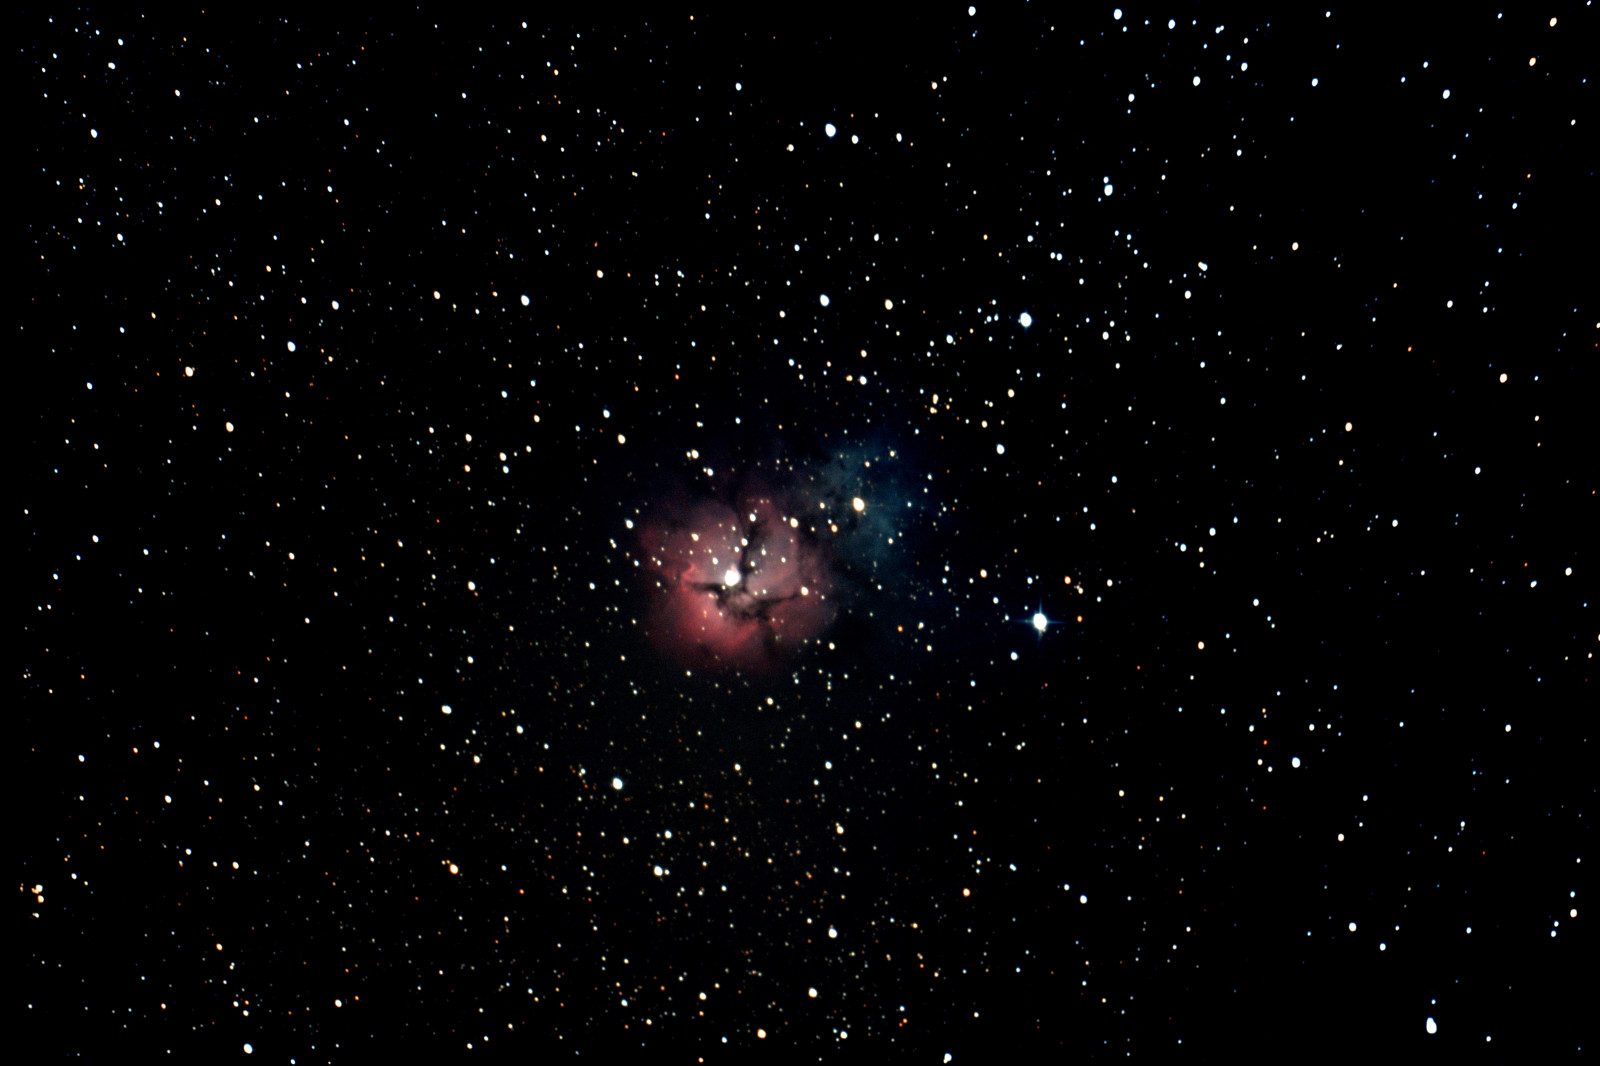 nebula, Sagittarius, di rasi bintang, membaur, trilobal, Nebula Trifid